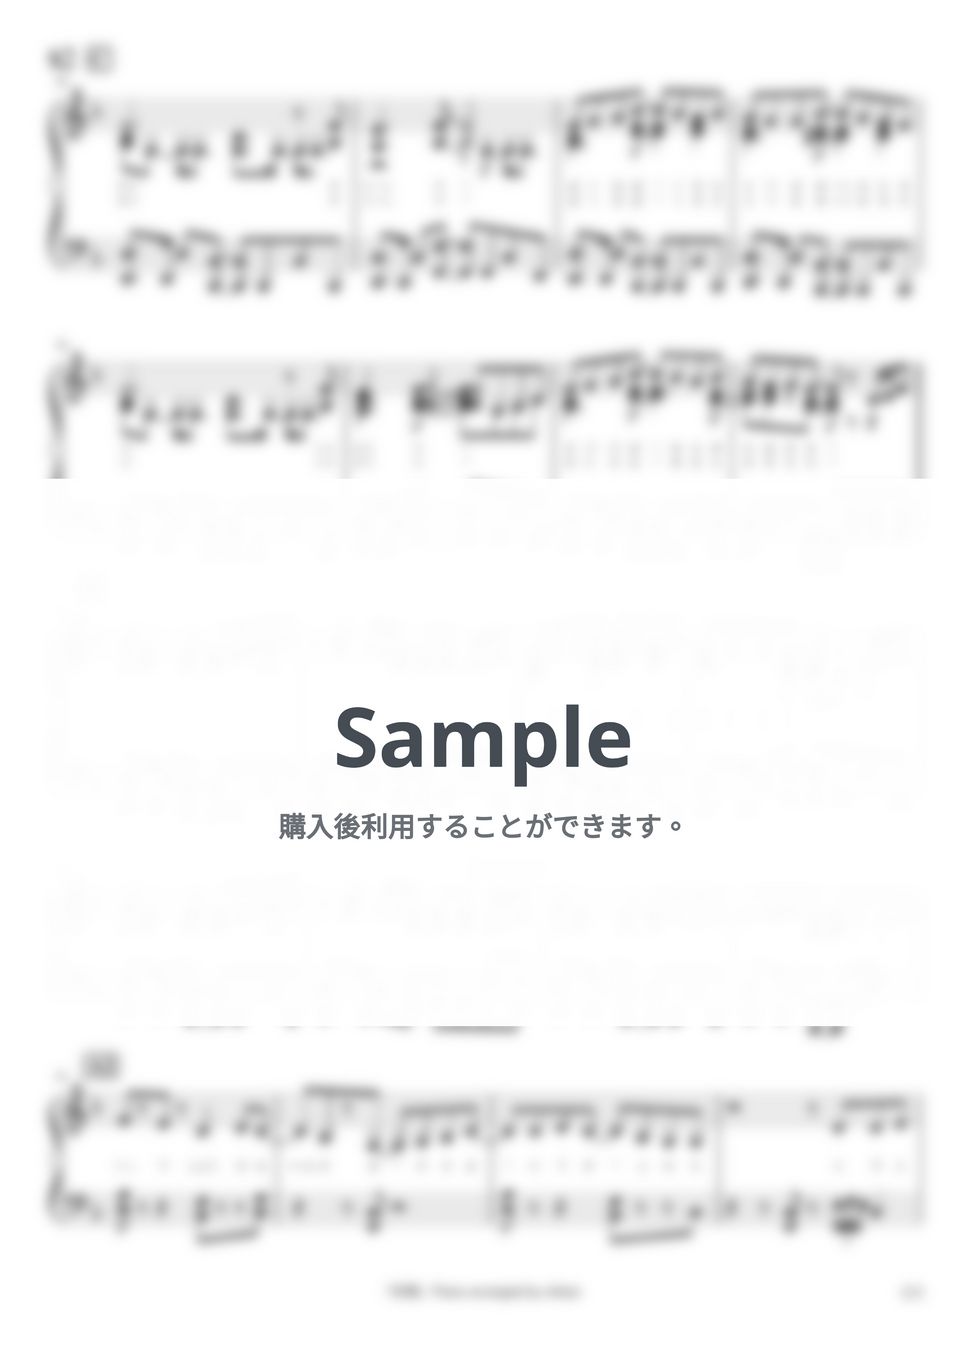 ヨルシカ - 斜陽 by pianomikan